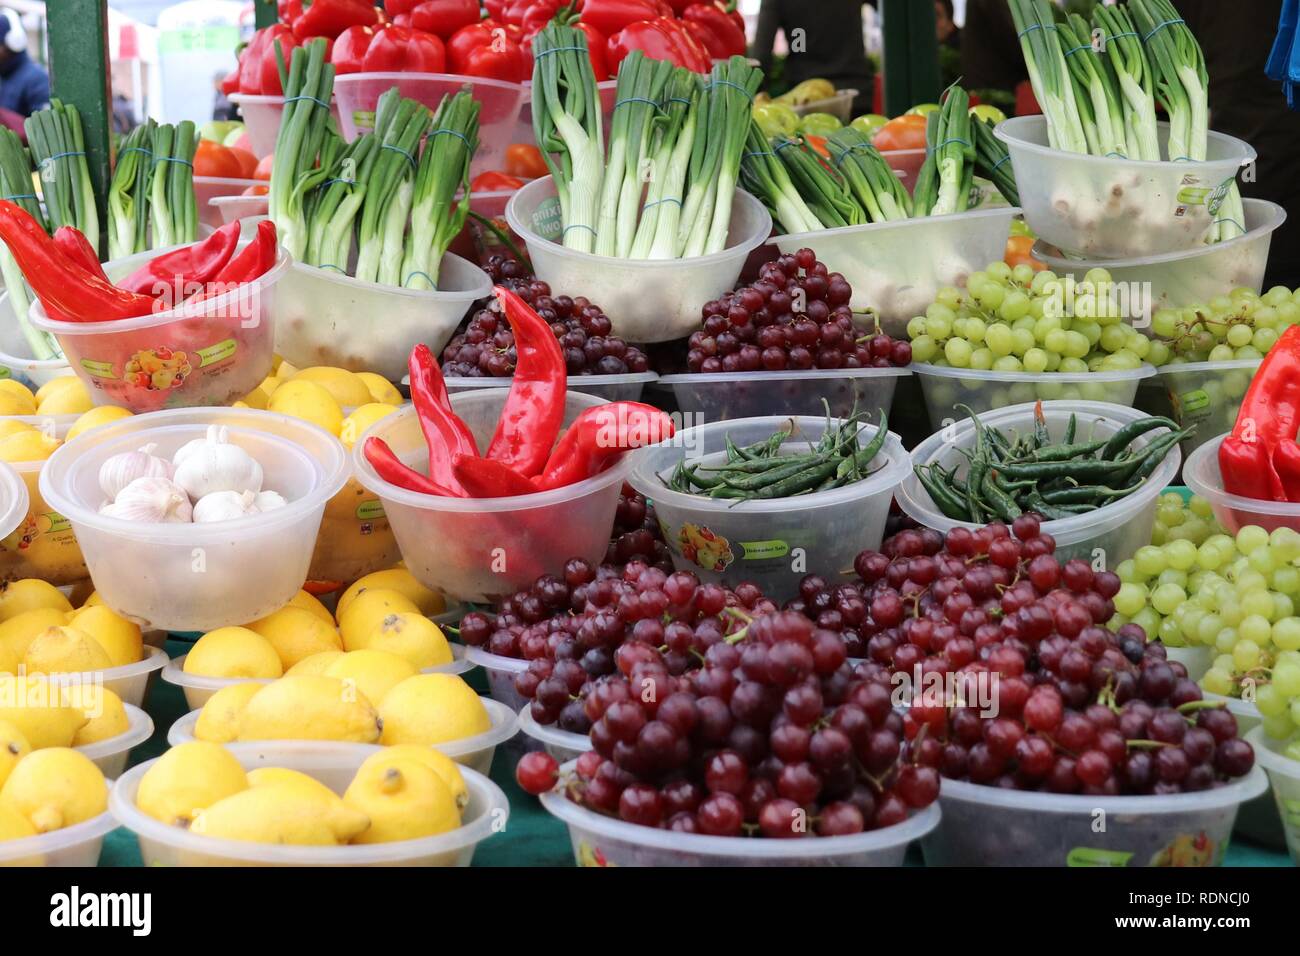 Fruit and Veg Market Stock Photo